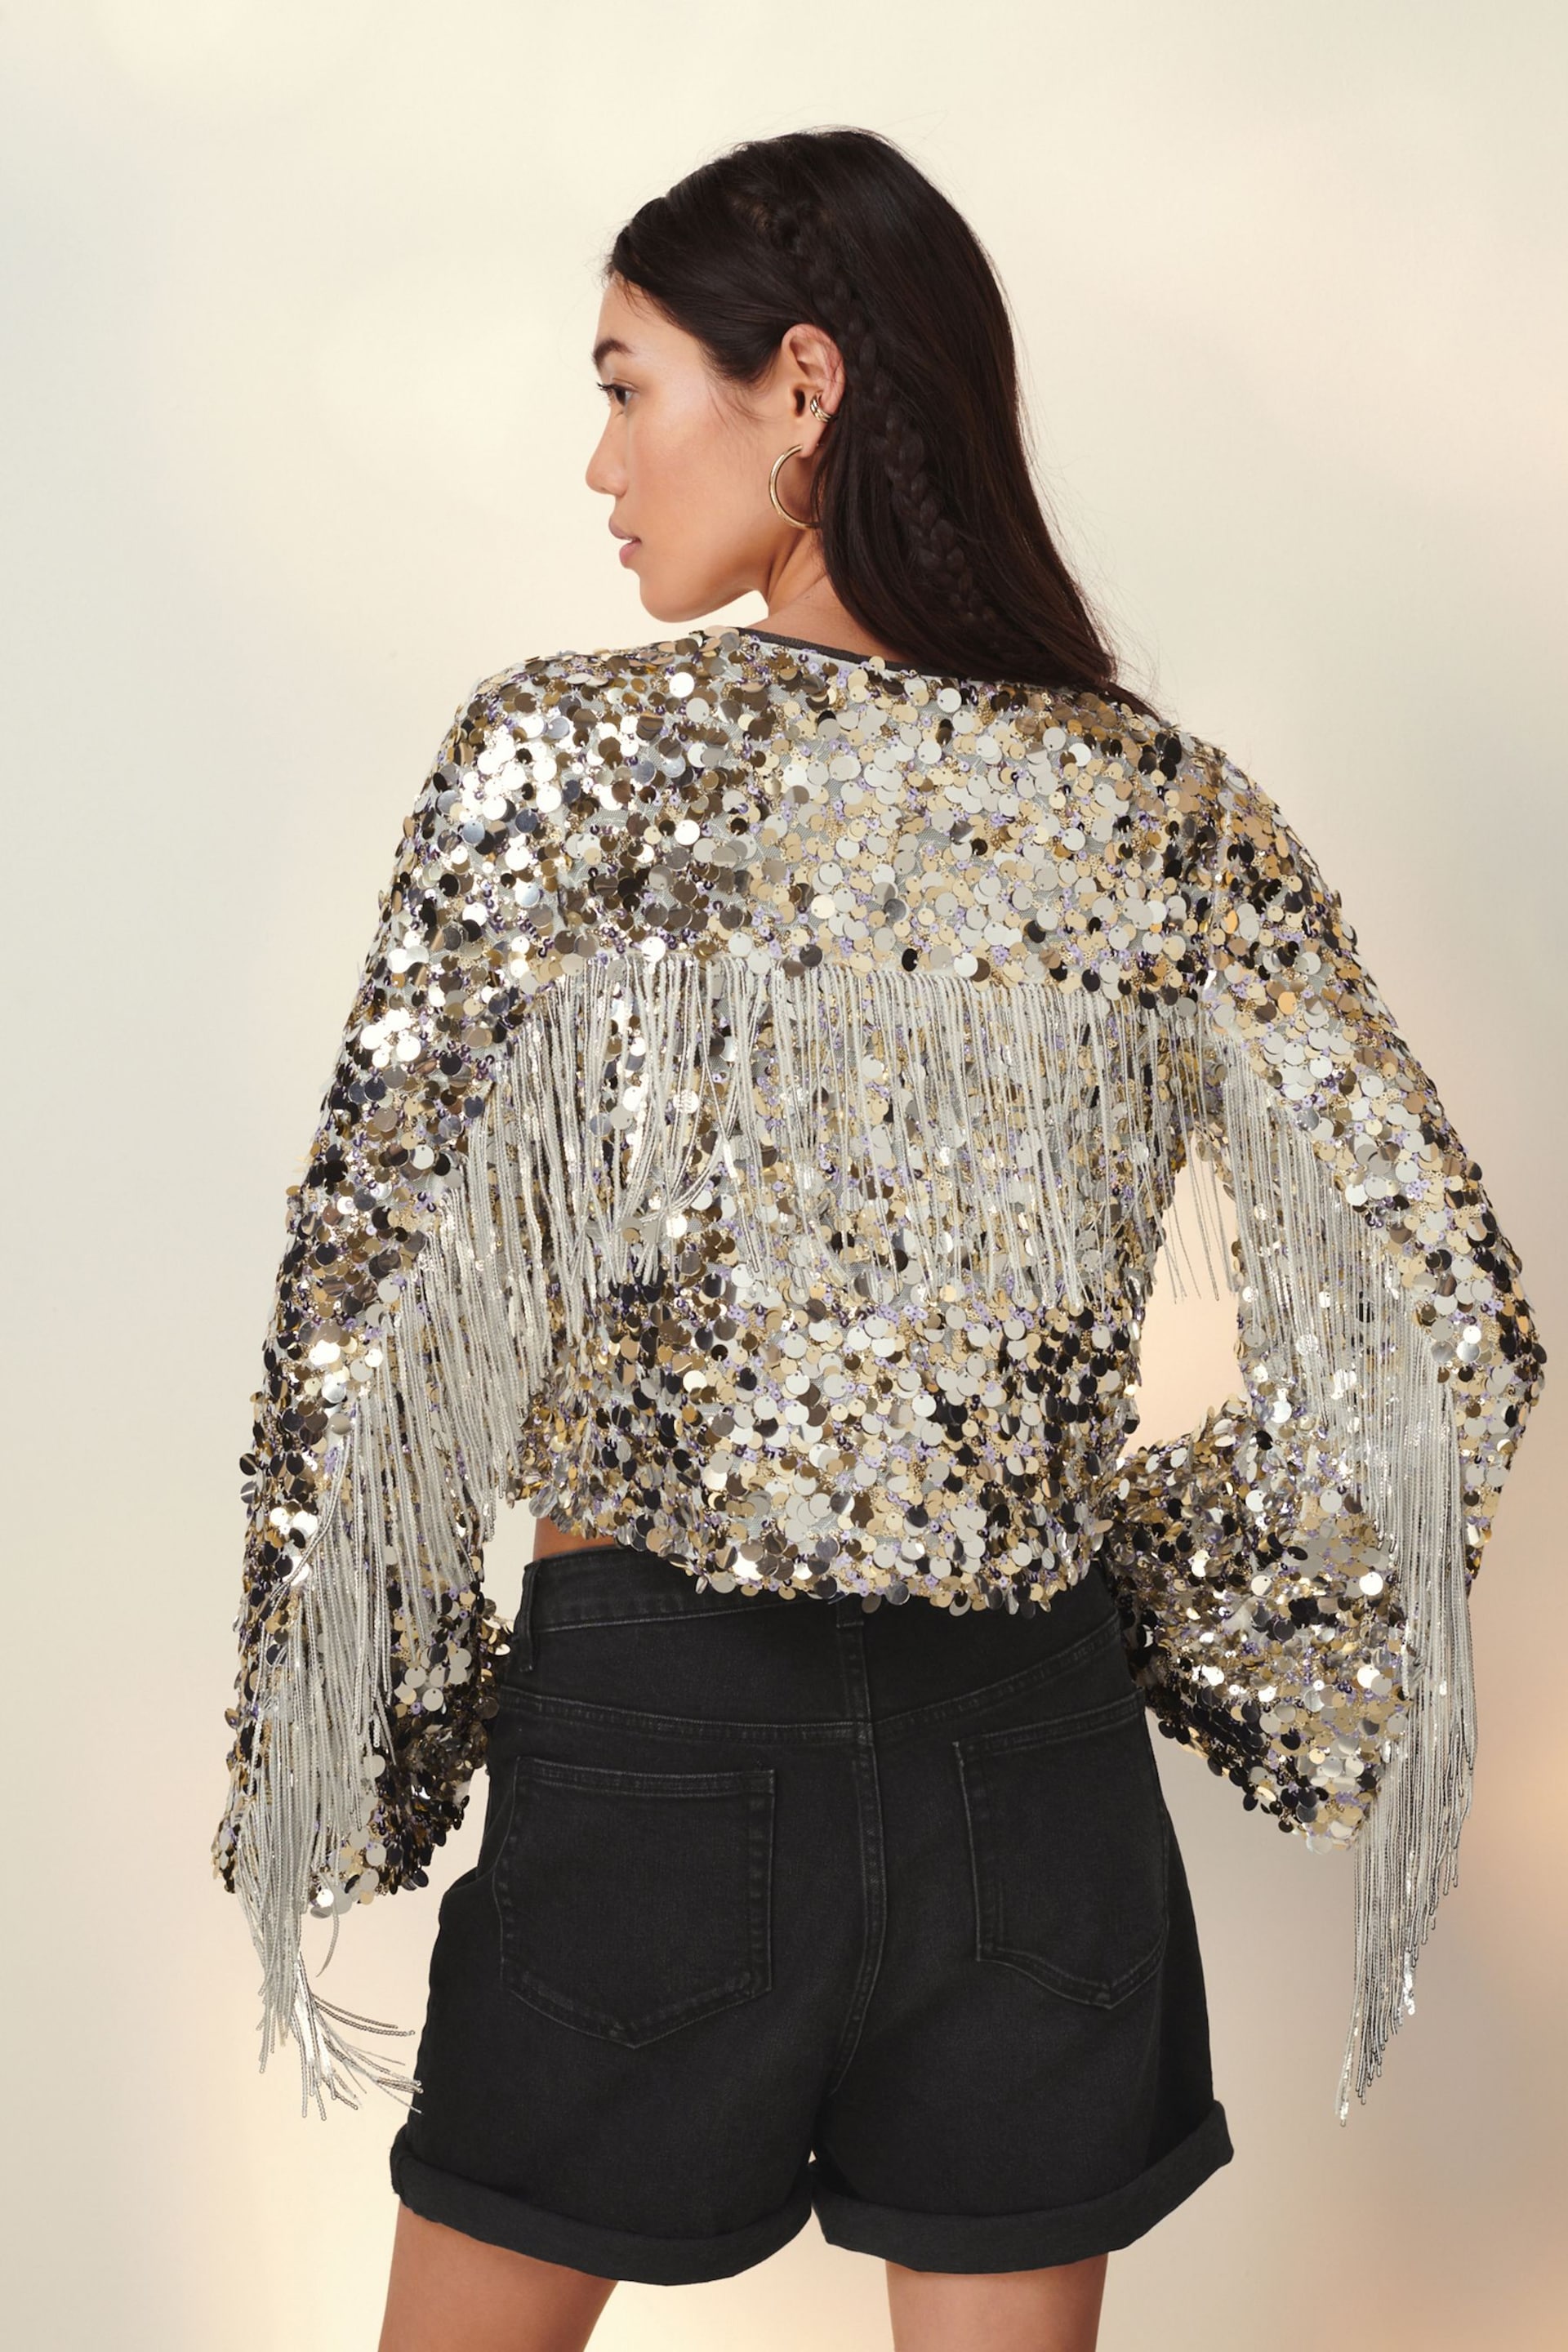 Silver Sequin Fringe Kimono Jacket - Image 1 of 6